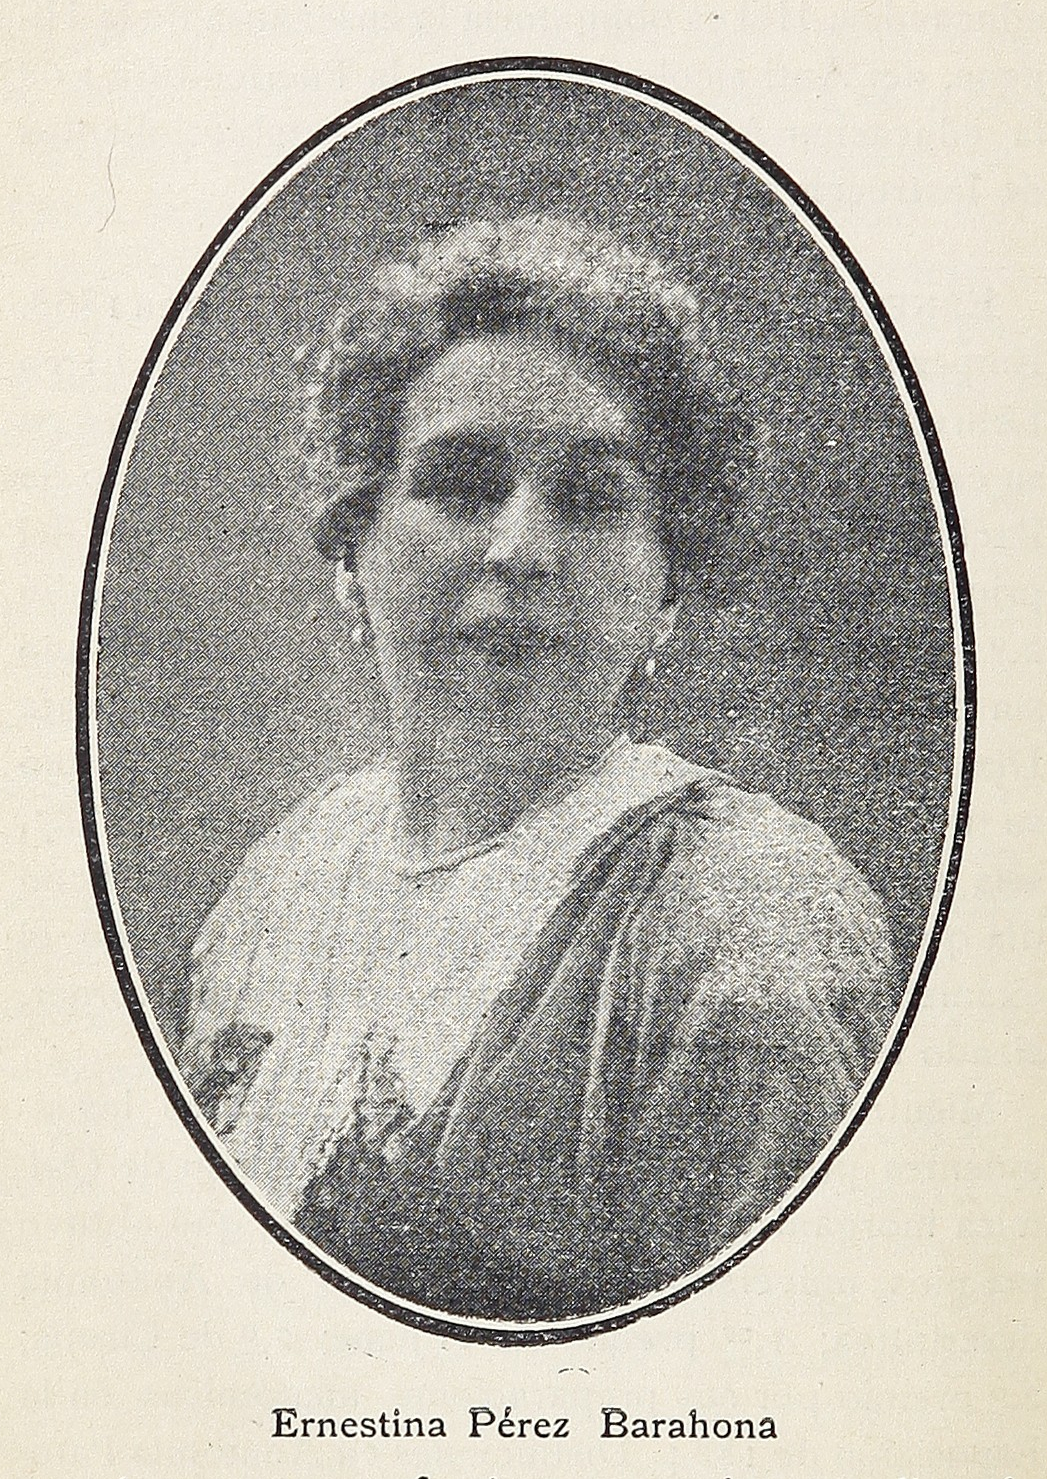 Ernestina Pérez Barahona